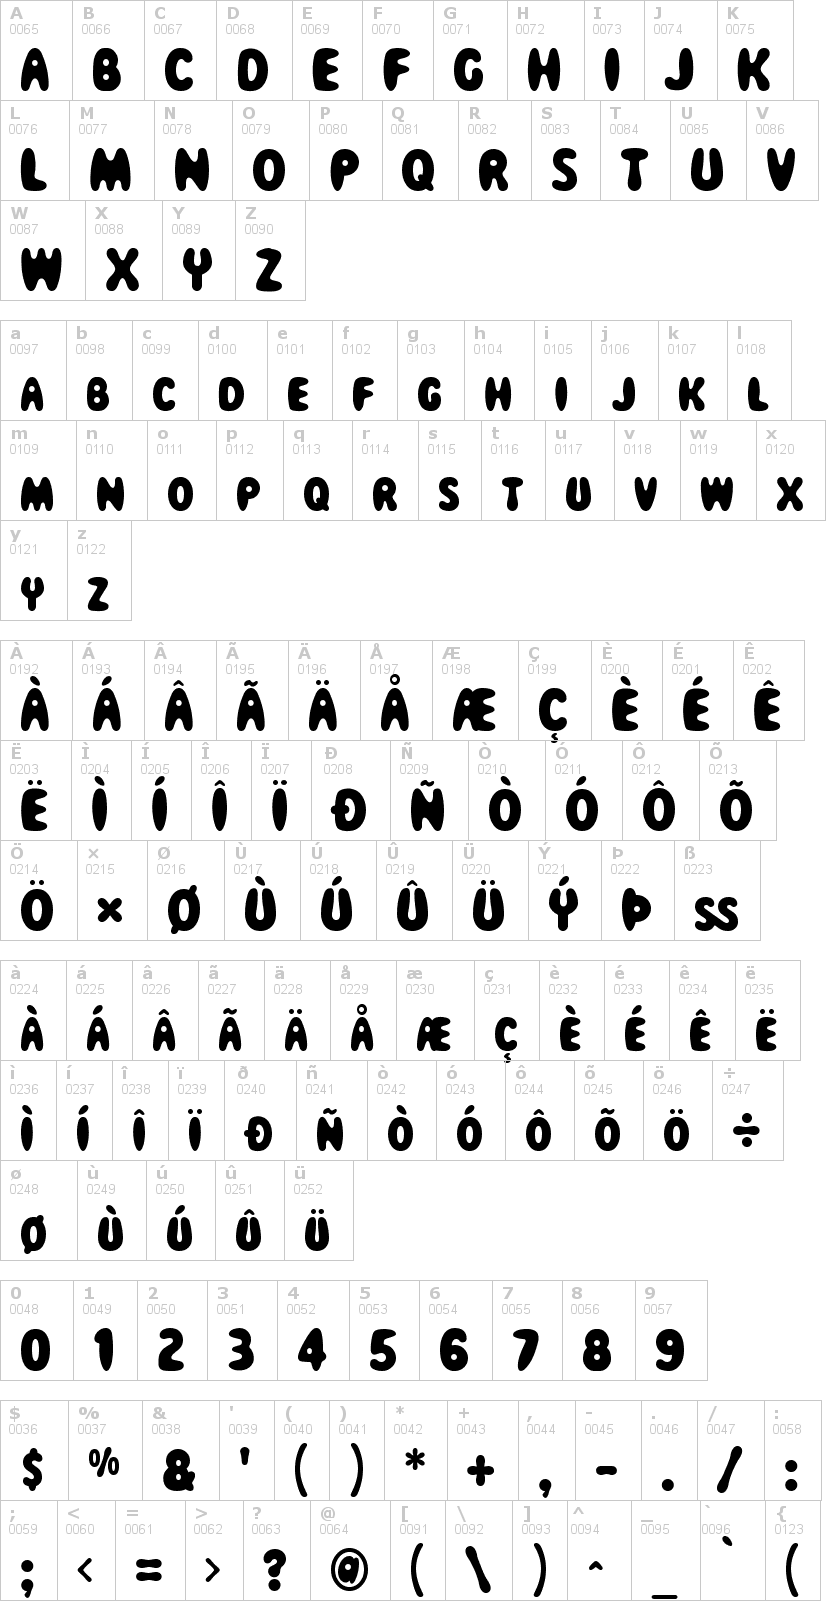 Lettere dell'alfabeto del font magical-mystery-tour con le quali è possibile realizzare adesivi prespaziati